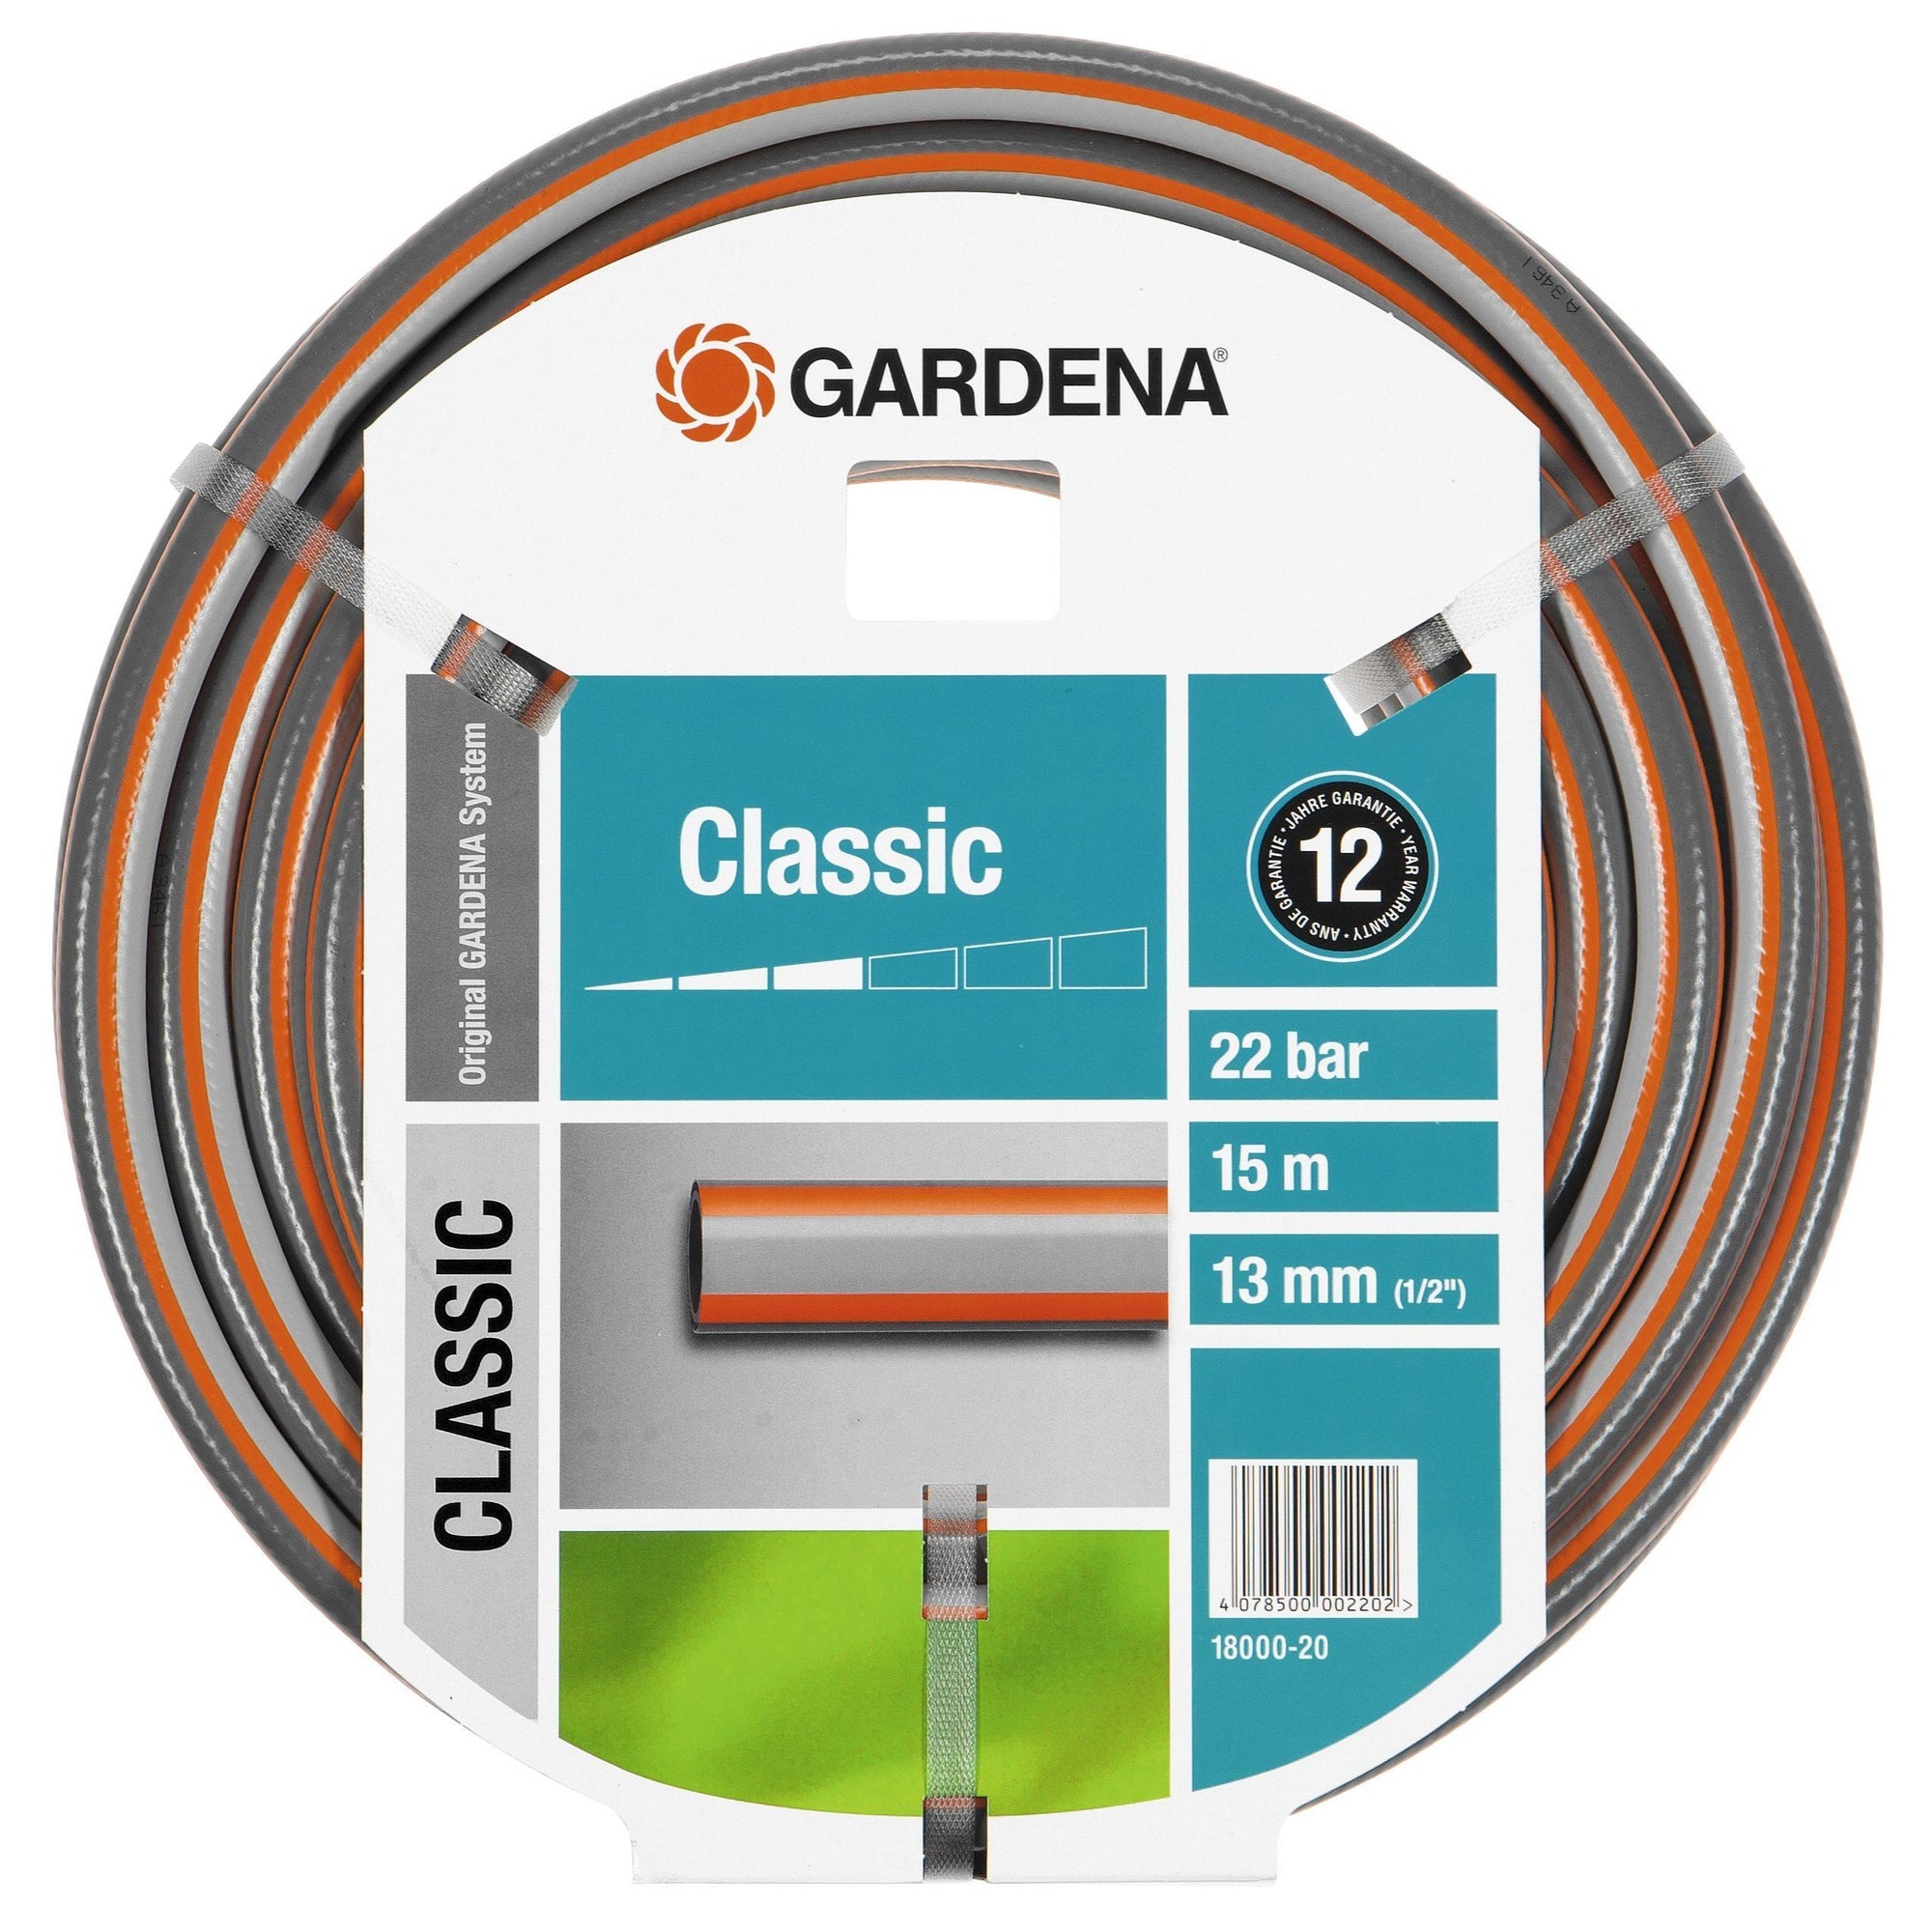 Gardena G-18000 Classic 15M 1/2" Hose